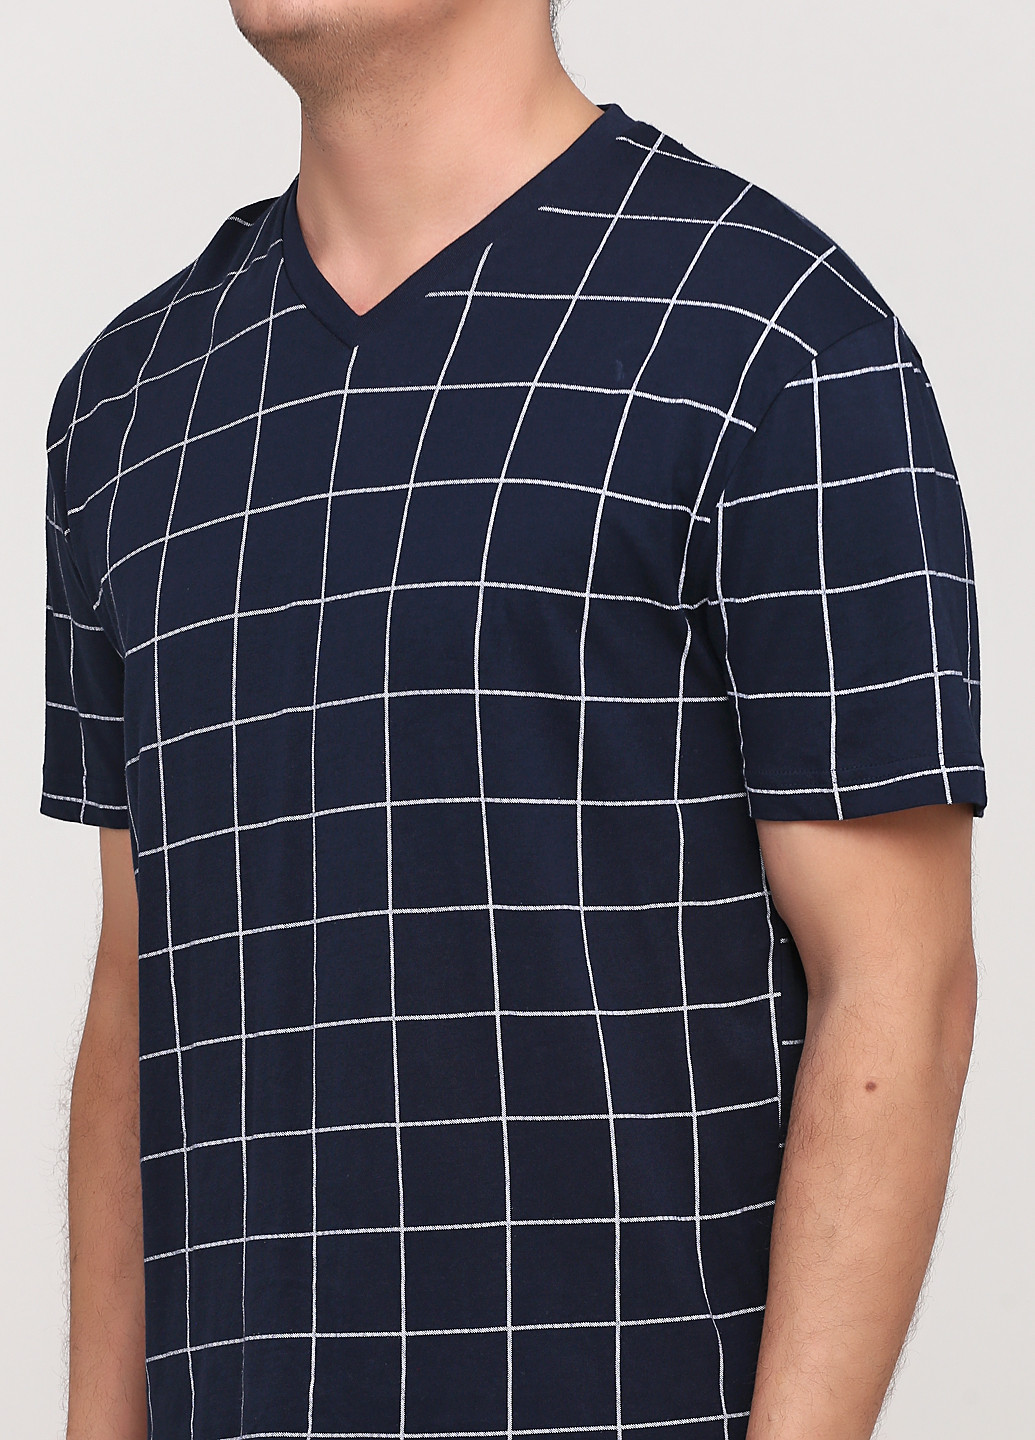 Піжама (футболка, шорти) C&A футболка + шорти клітинка комбінована домашня трикотаж, бавовна